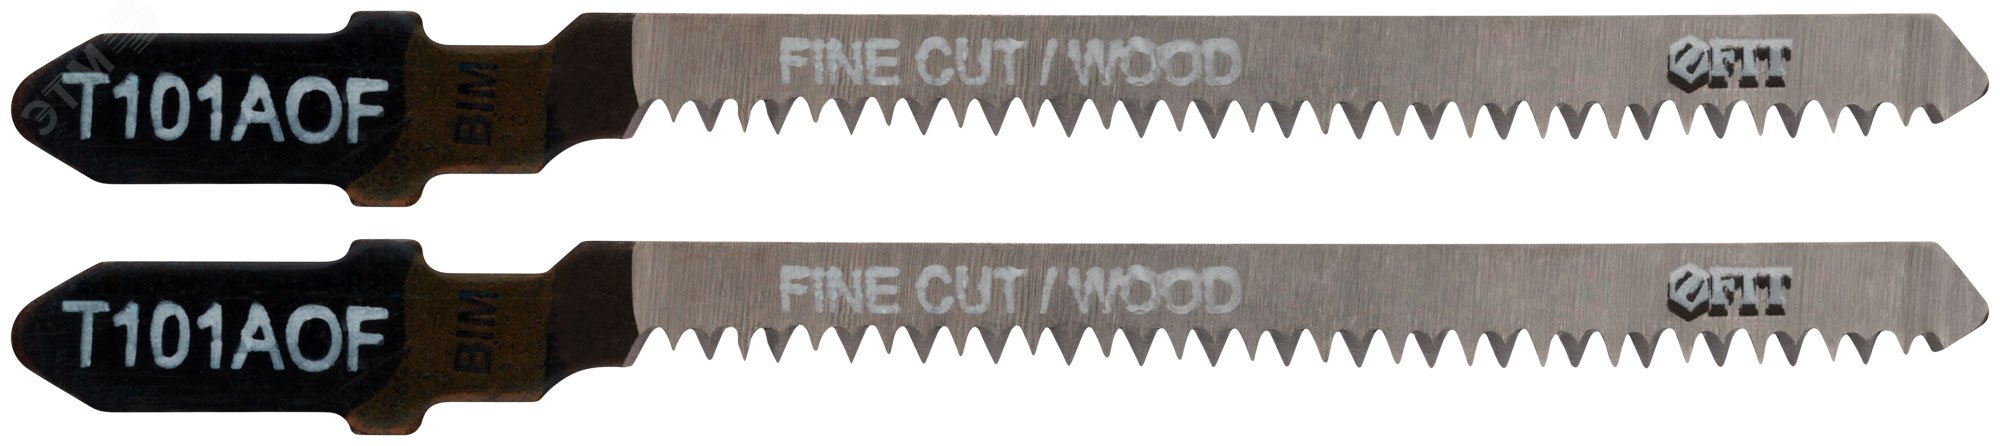 Полотна по дереву, Bimetal, остроконечные зубья, 82/57/1.4 мм (Т101AOF), 2 шт 40952 FIT - превью 2